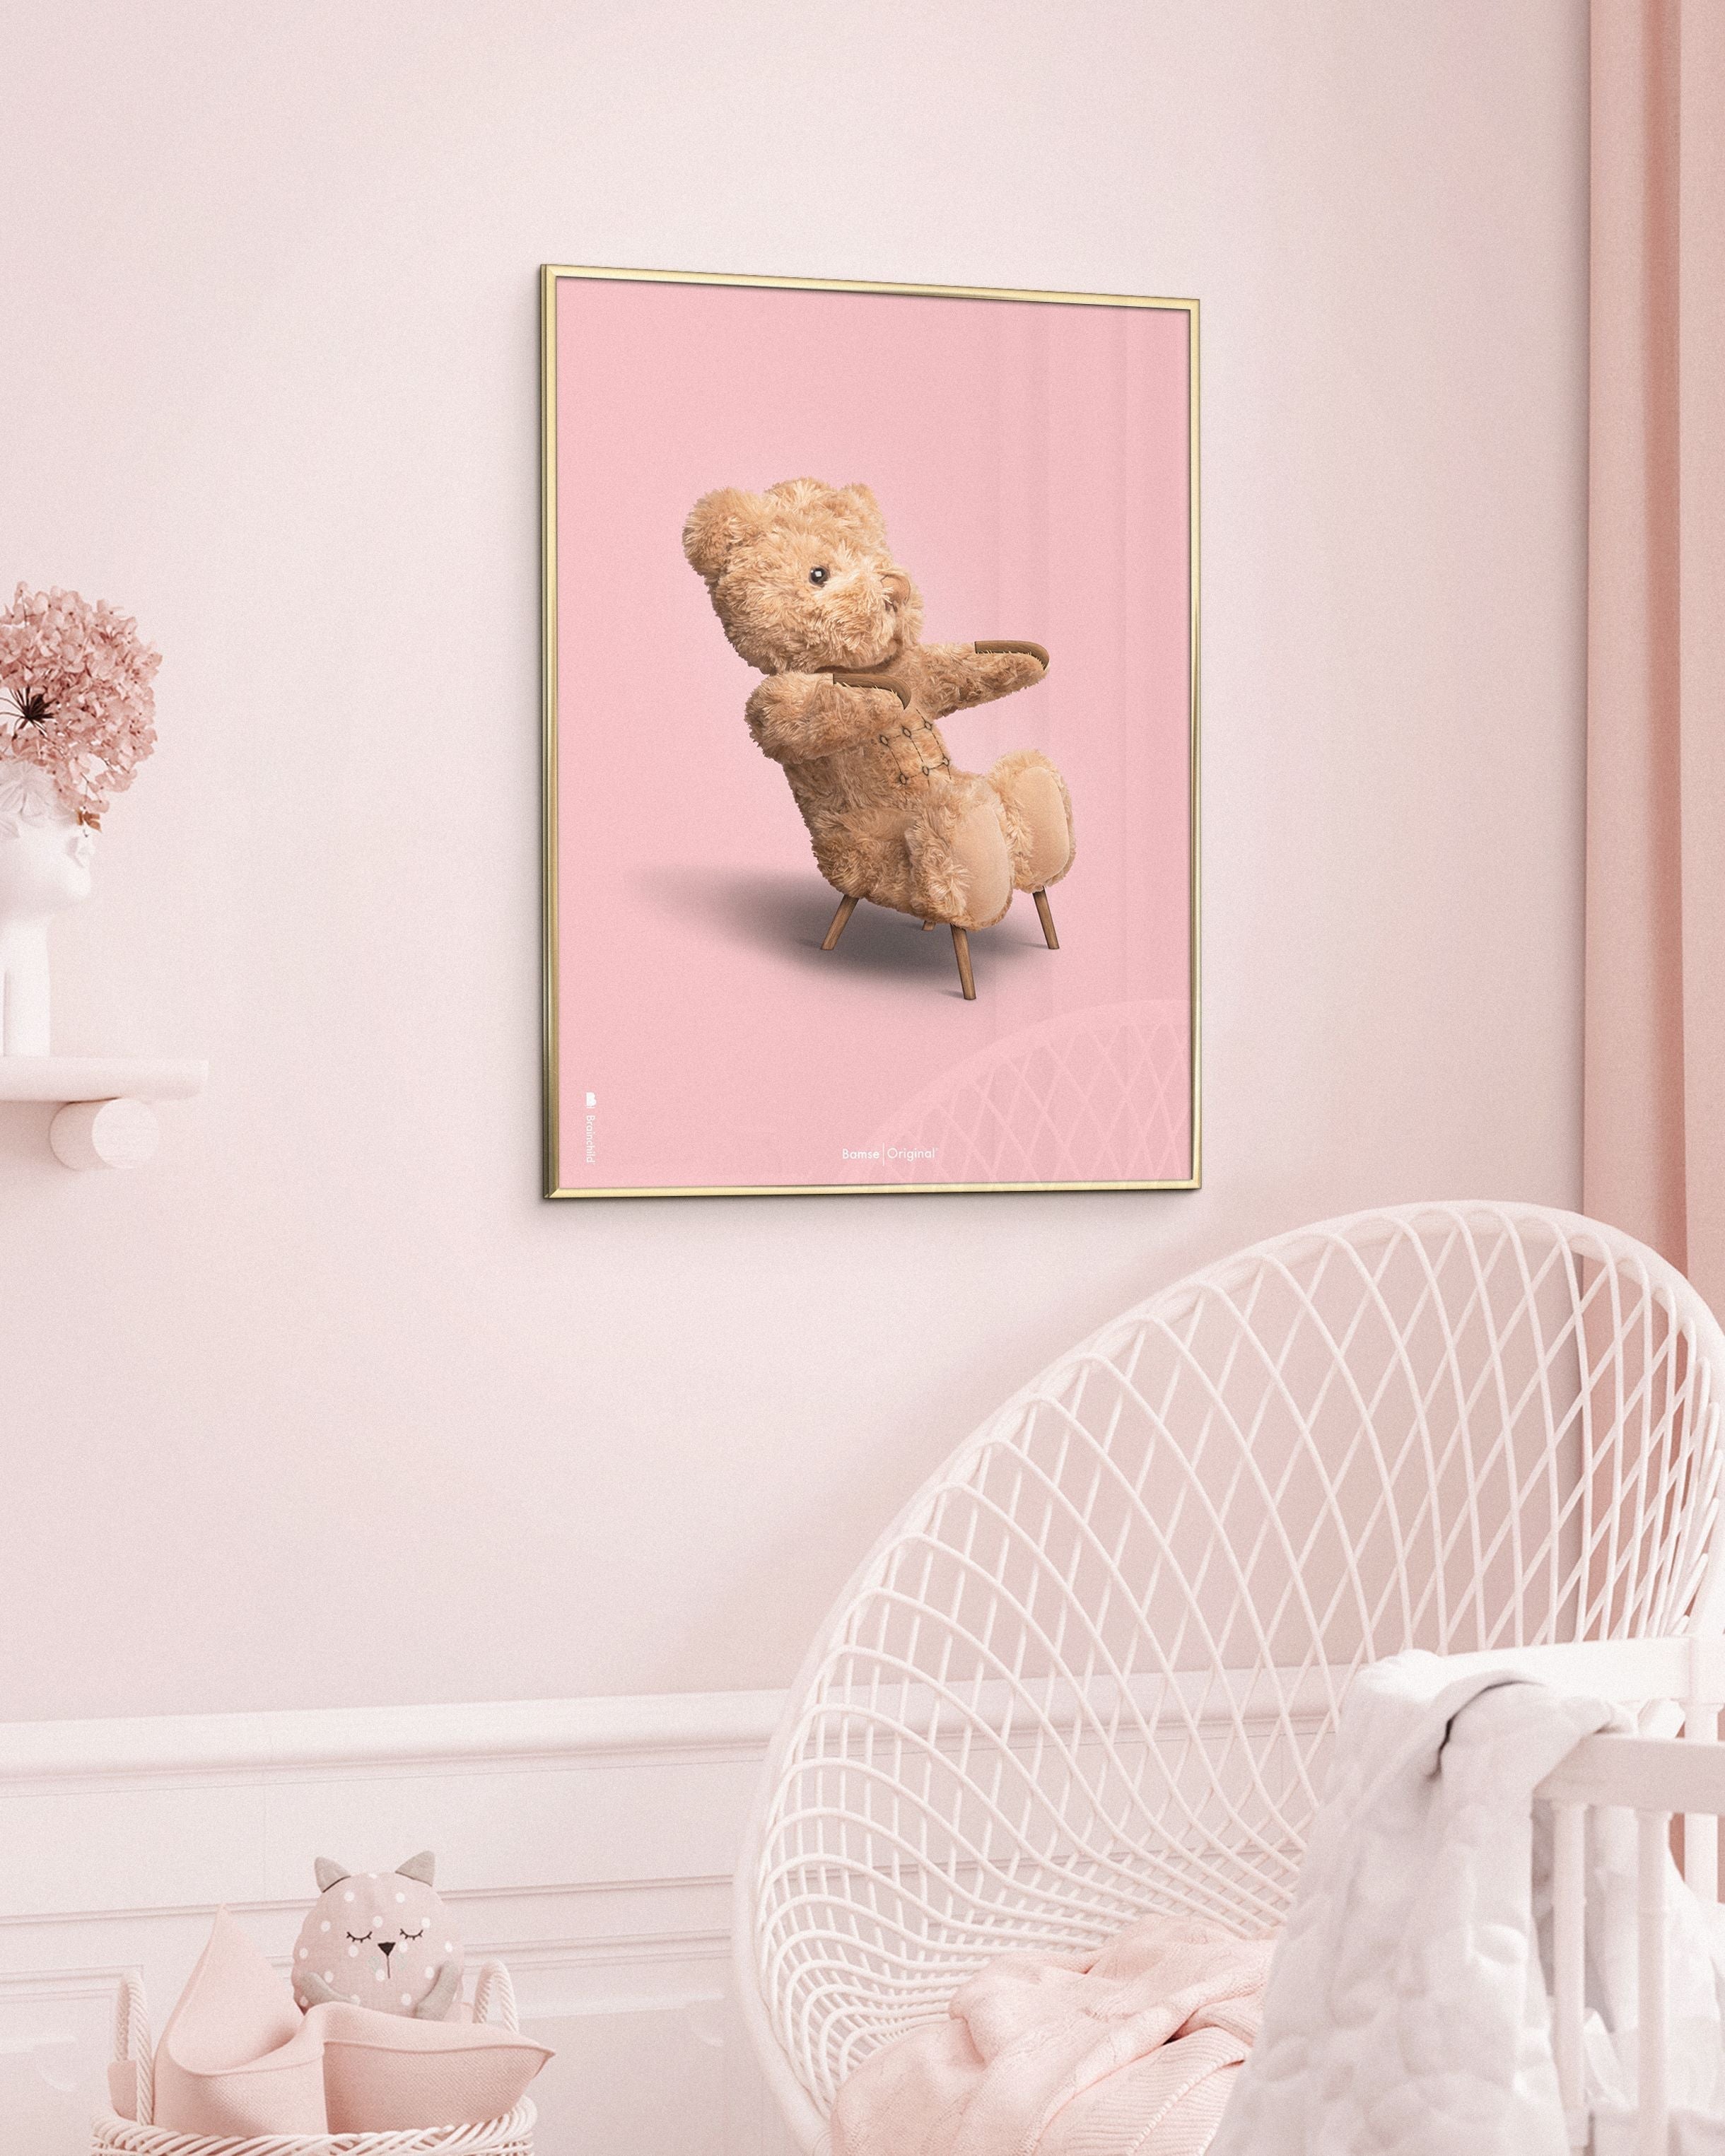 Marco de póster clásico de BrainChild Teddy Bear Hecho de madera clara Ramme 50x70 cm, fondo rosa